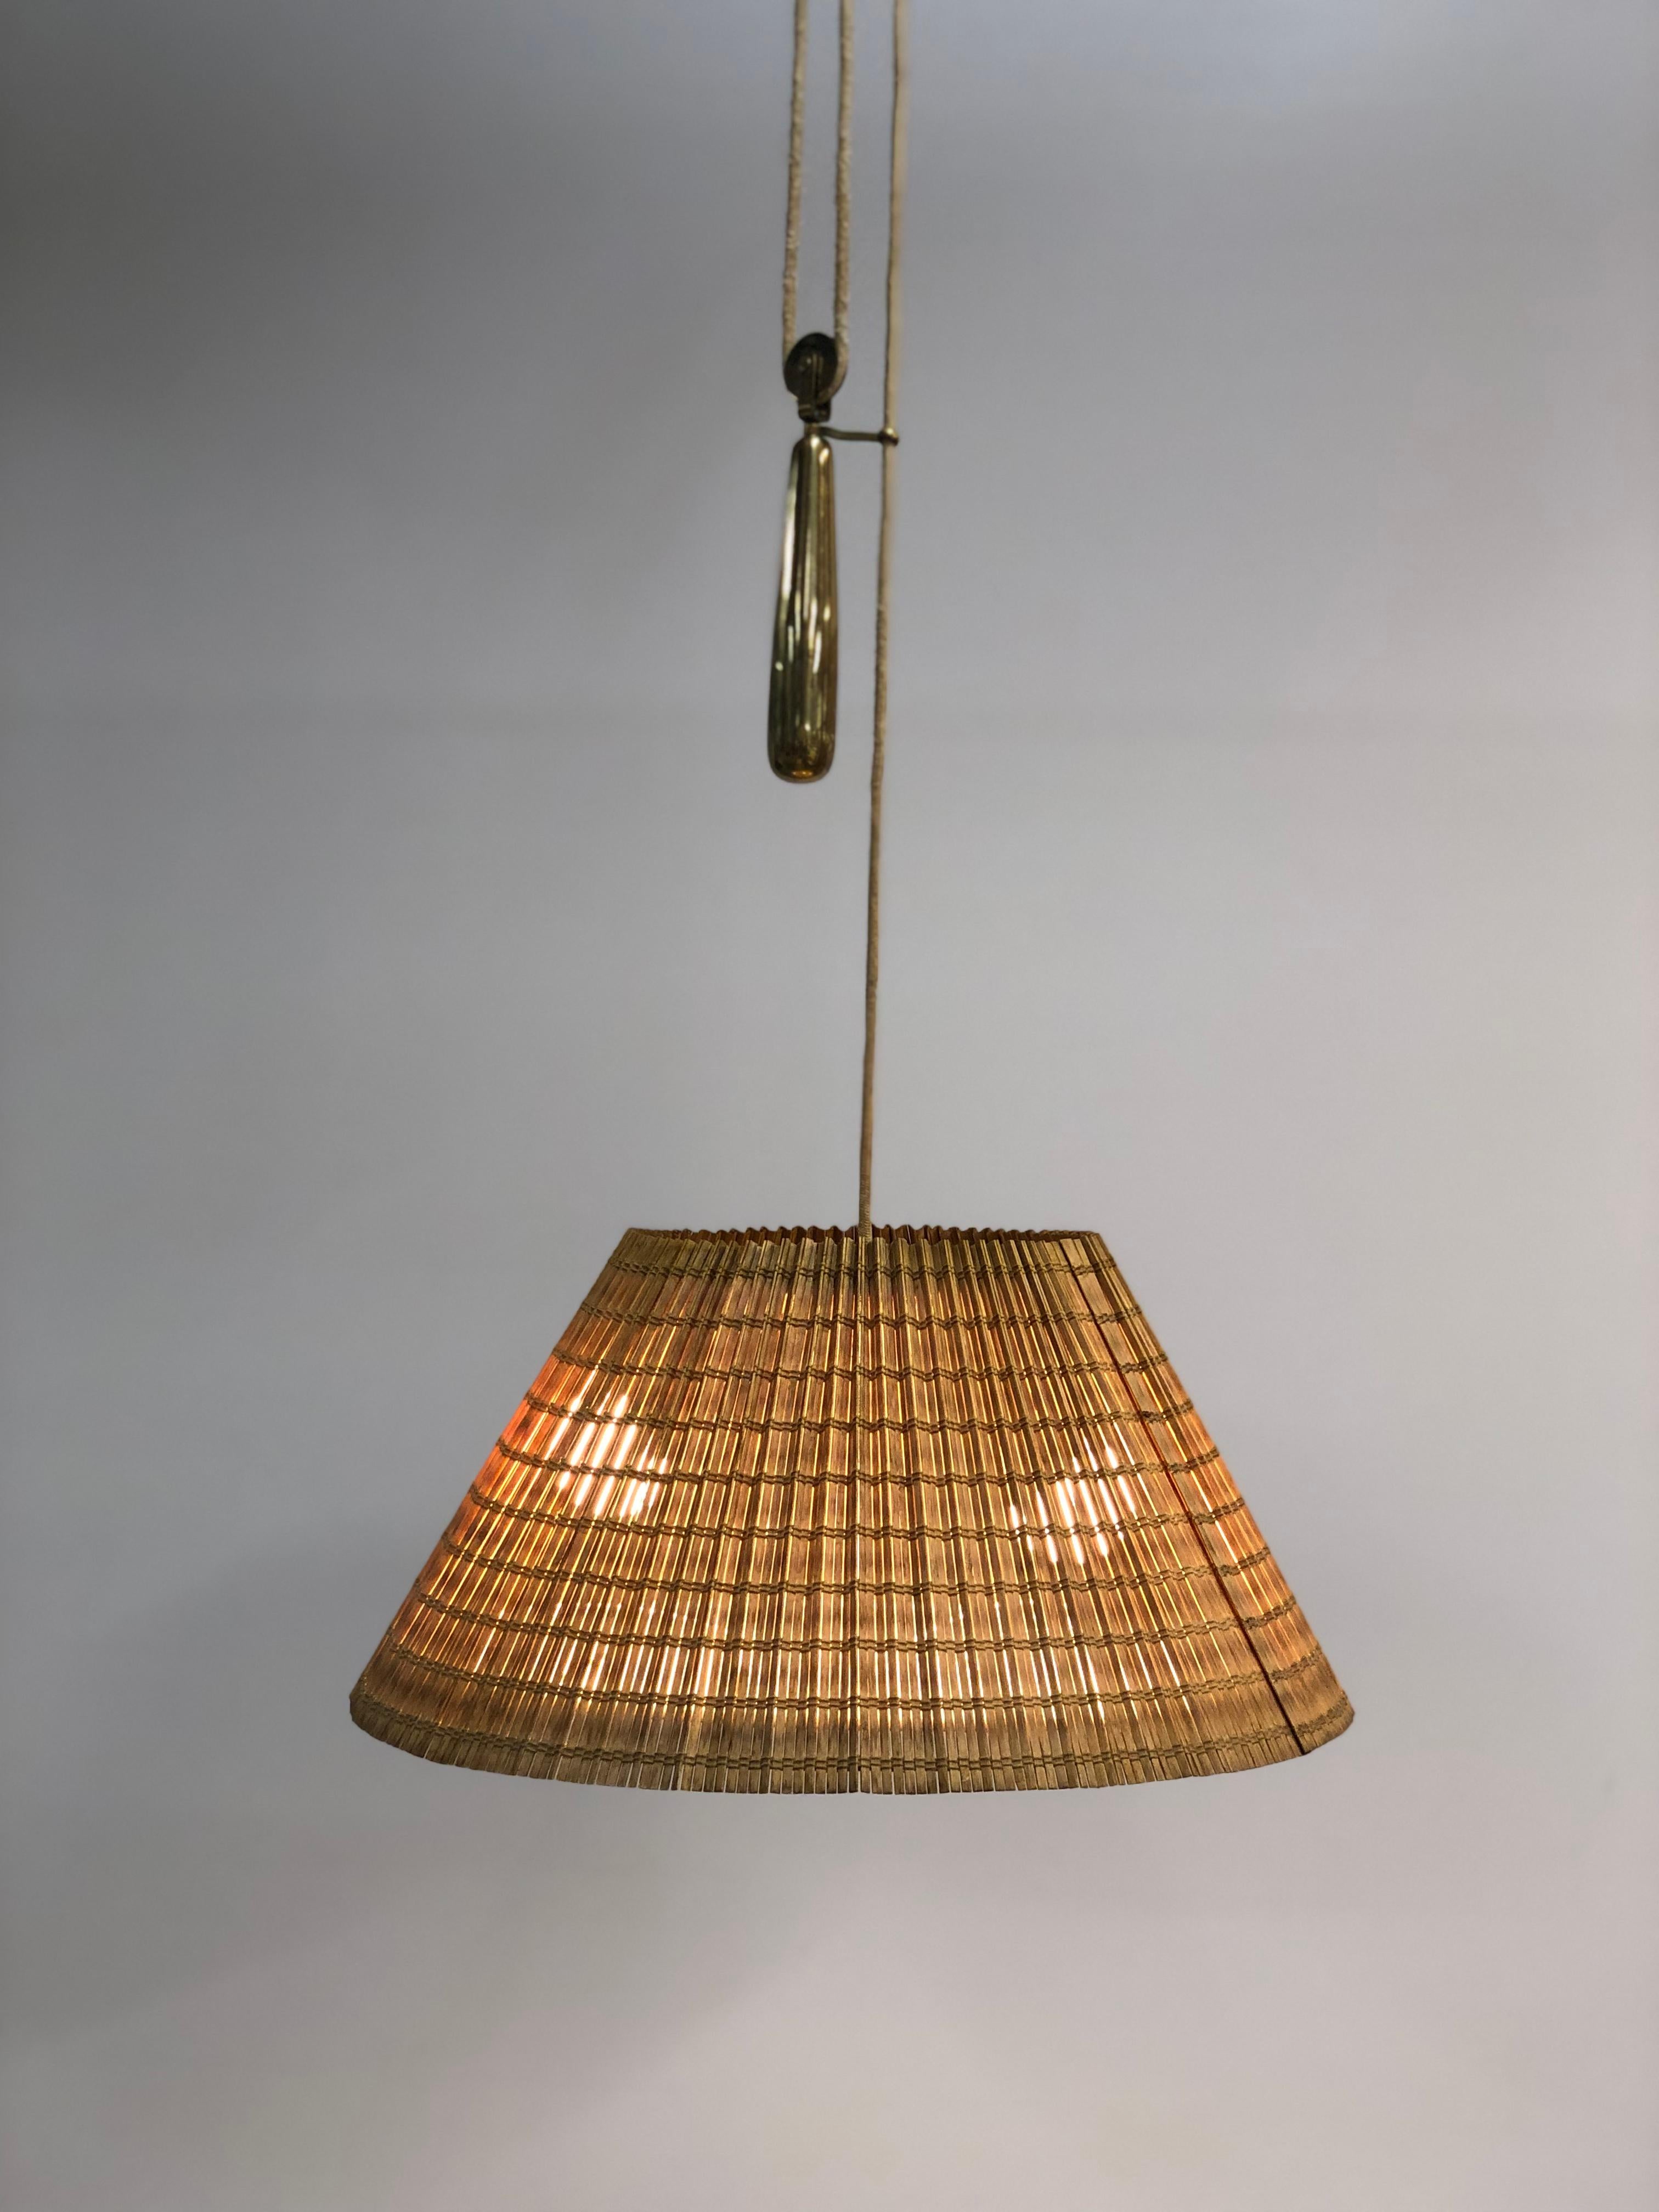 Une belle lampe orientable de Paavo Tynell qui unit harmonieusement le laiton patiné à l'abat-jour en rotin et tissu. Le contrepoids met en valeur le génie de Tynell en permettant à la lampe de s'adapter à différentes hauteurs de plafond. La lampe